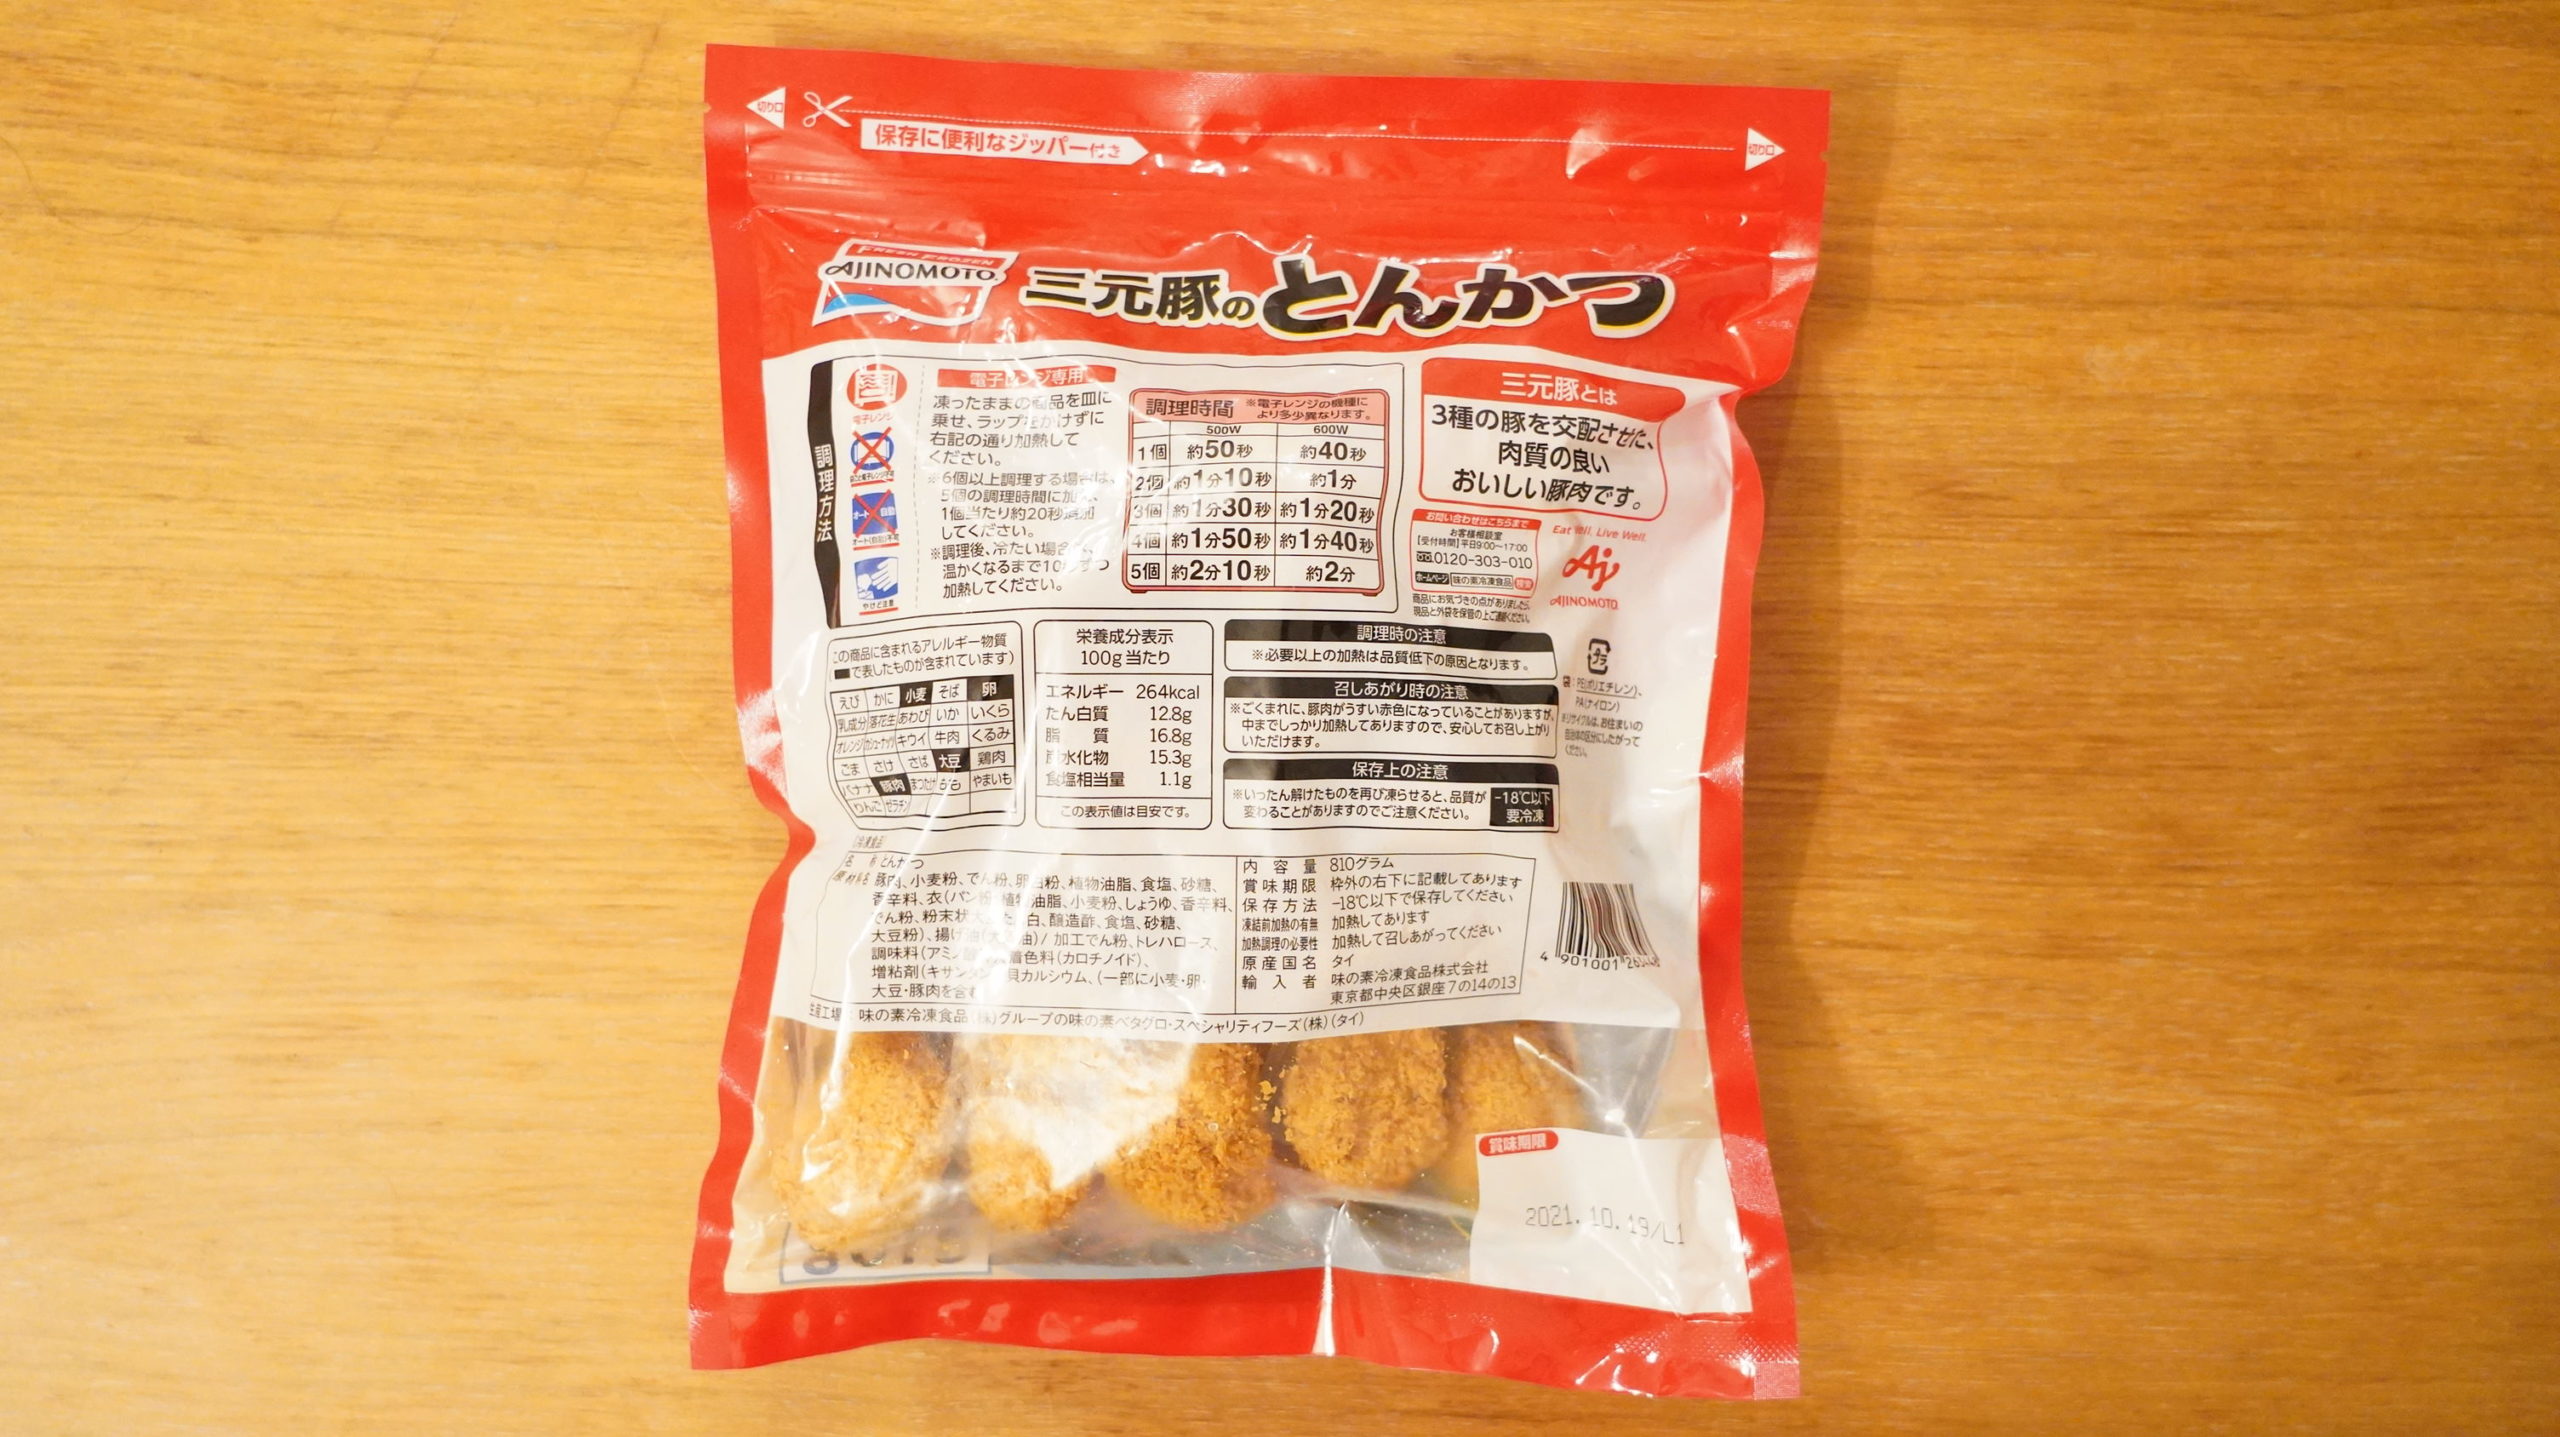 コストコの冷凍食品「味の素・三元豚のとんかつ」のパッケージ裏面の写真